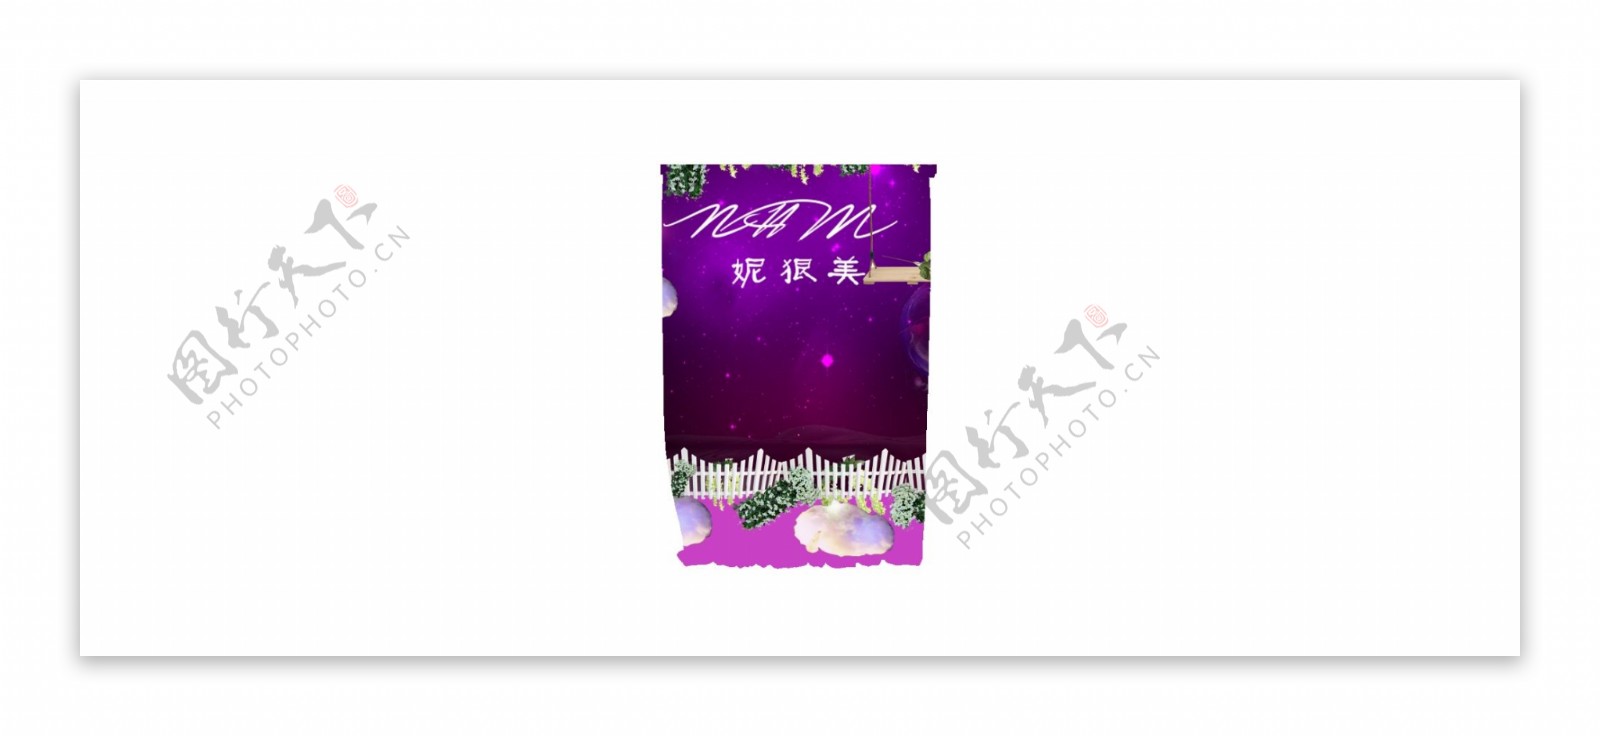 紫色帘幔婚礼展示区紫色背景喷绘